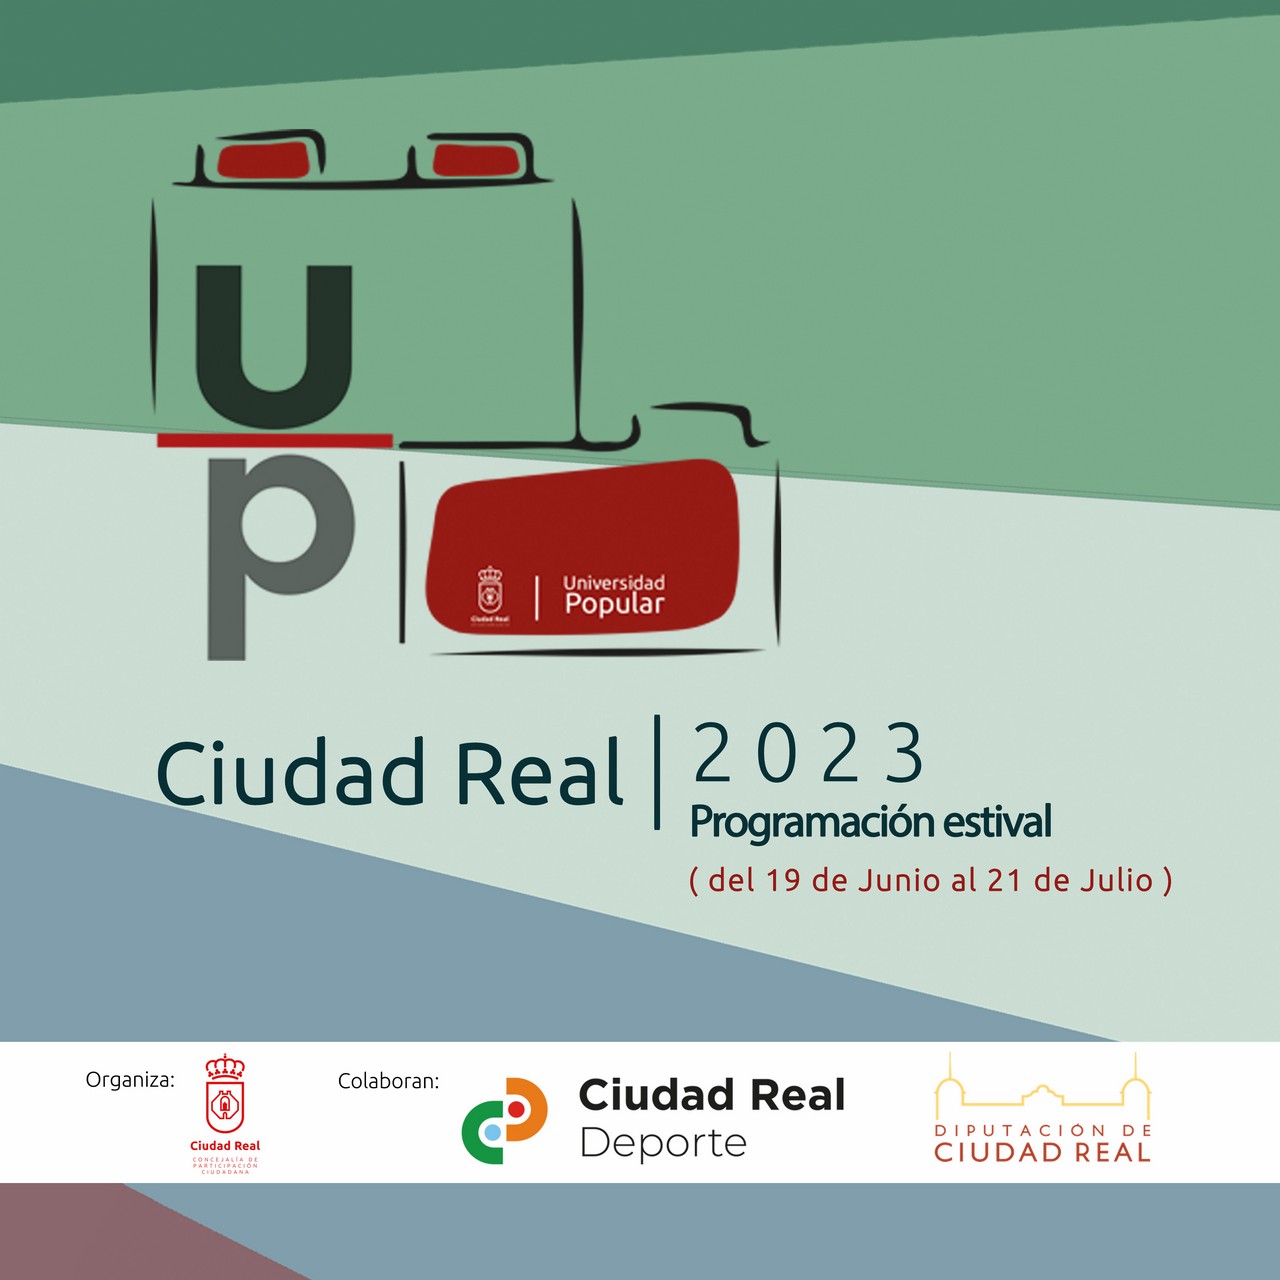 Universidad Popular de Ciudad Real